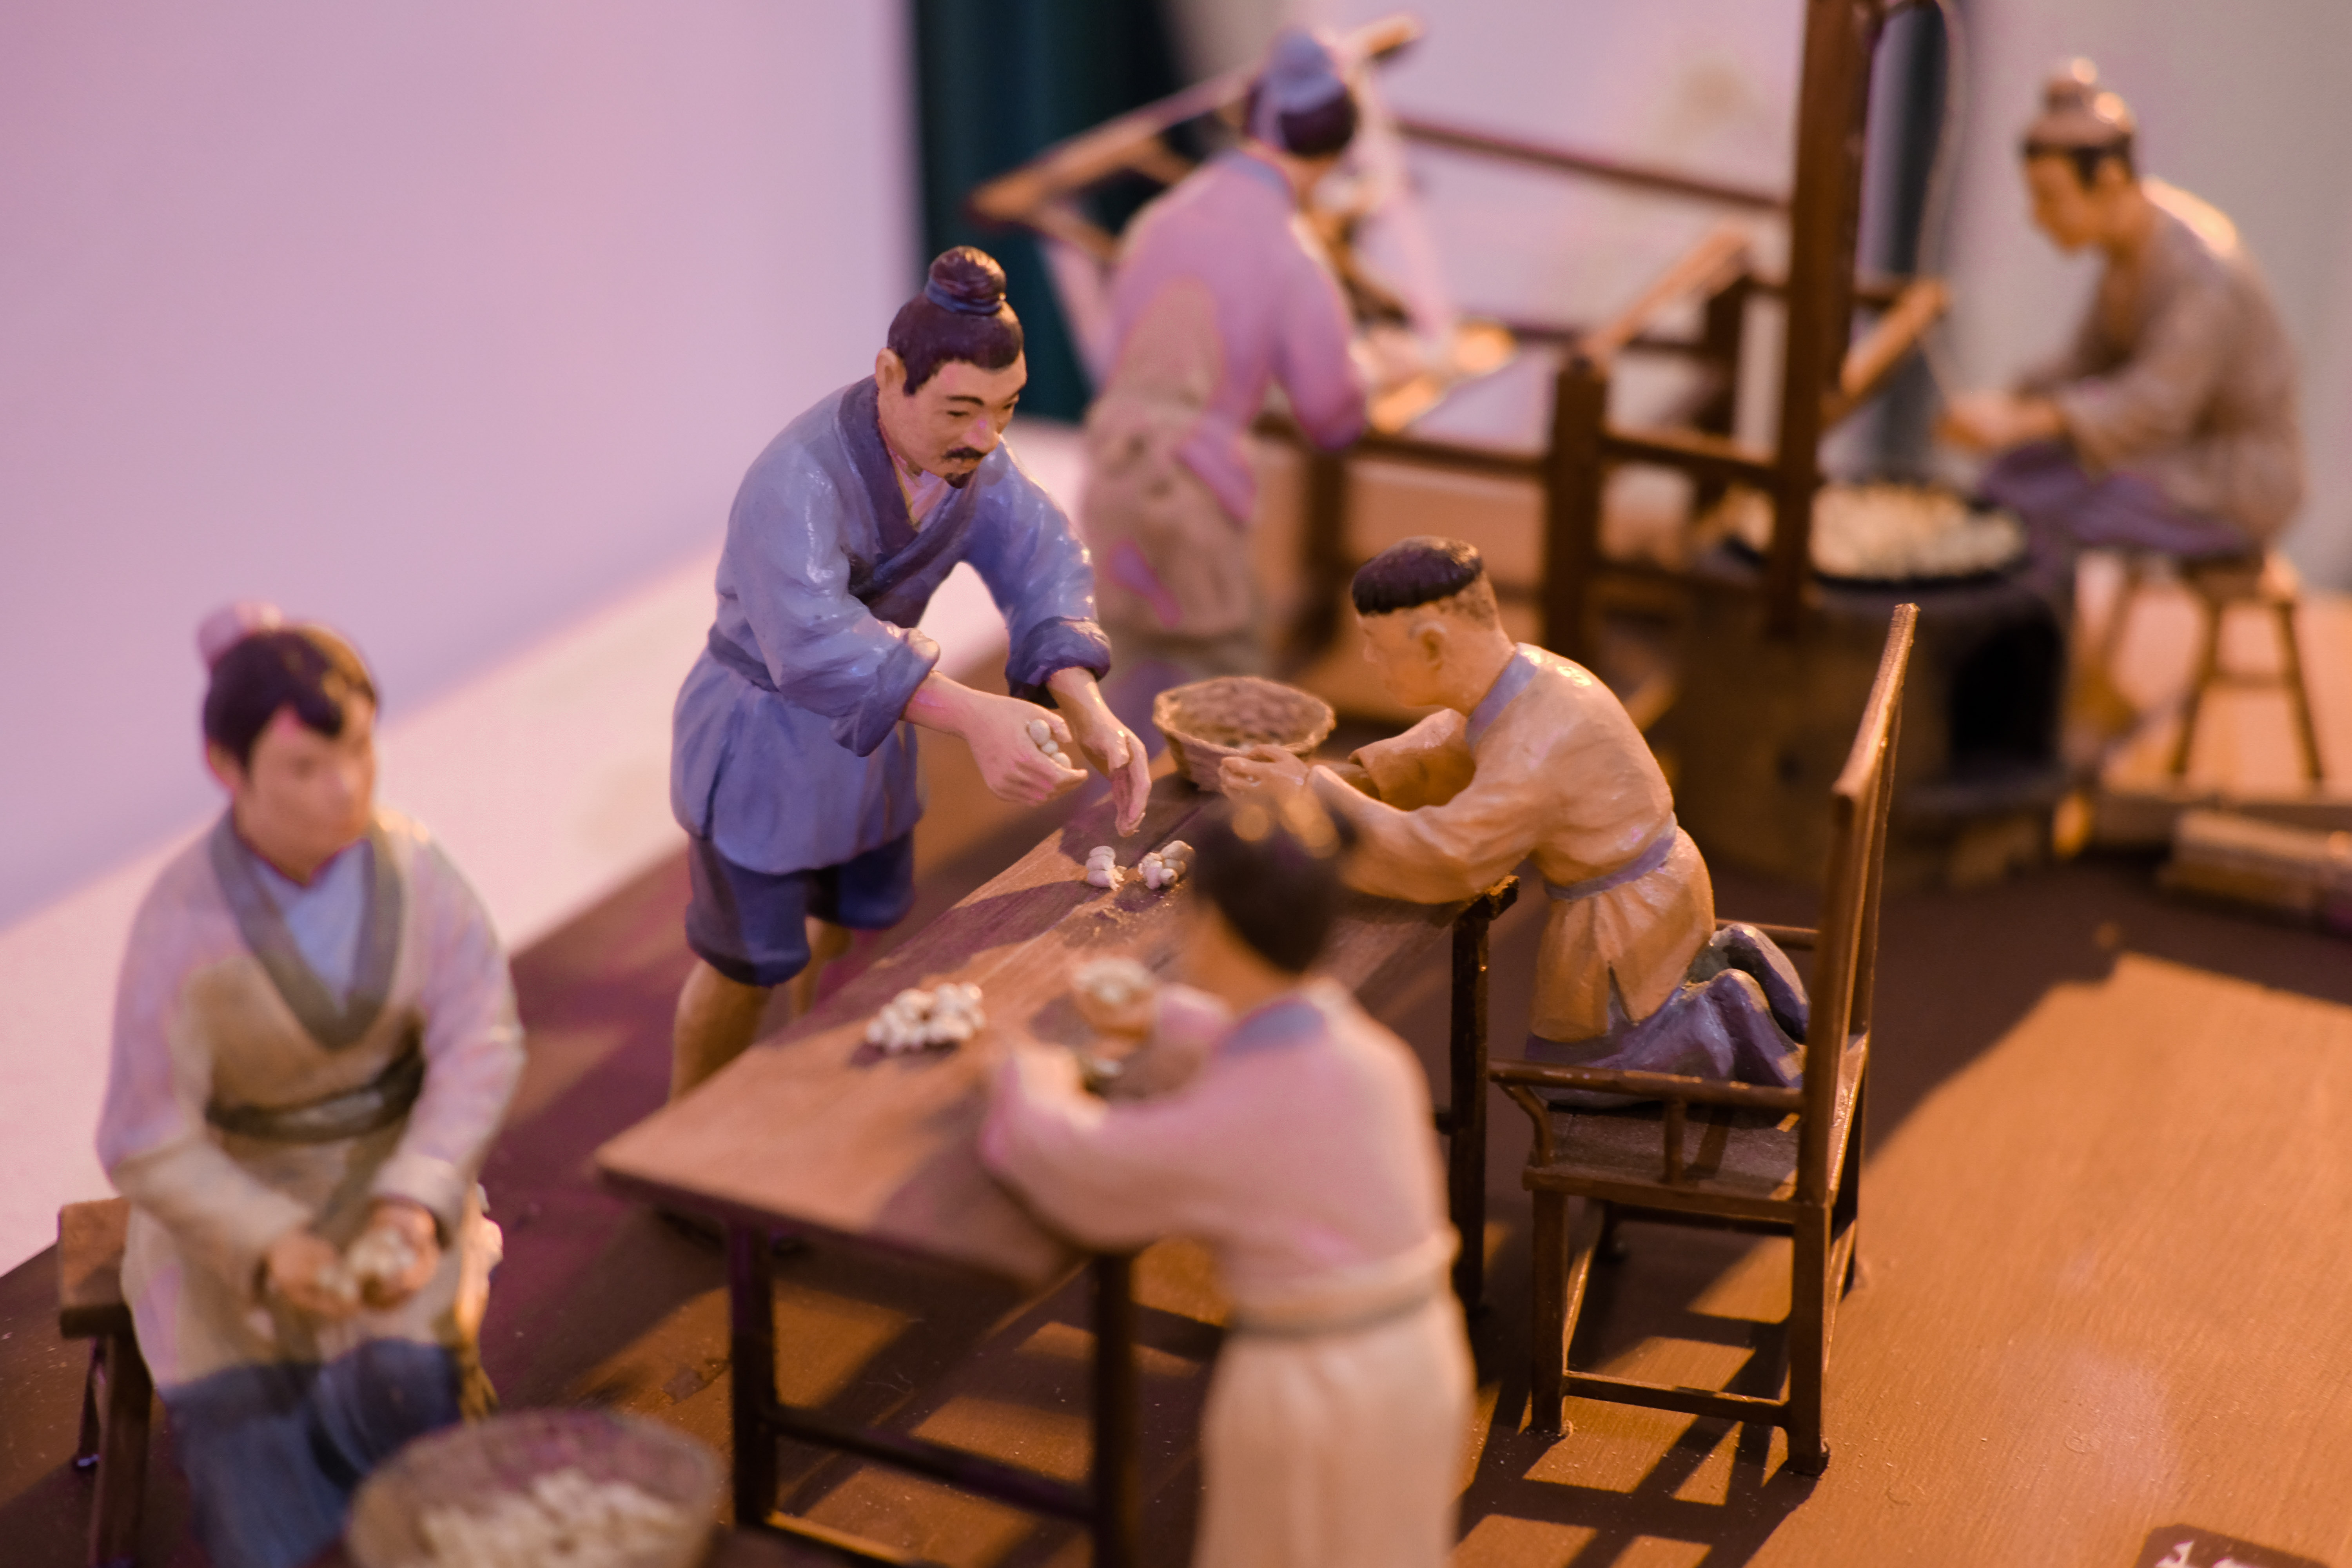 معرض الحرير والشاي والخزف من مبادرة هلا بالصين